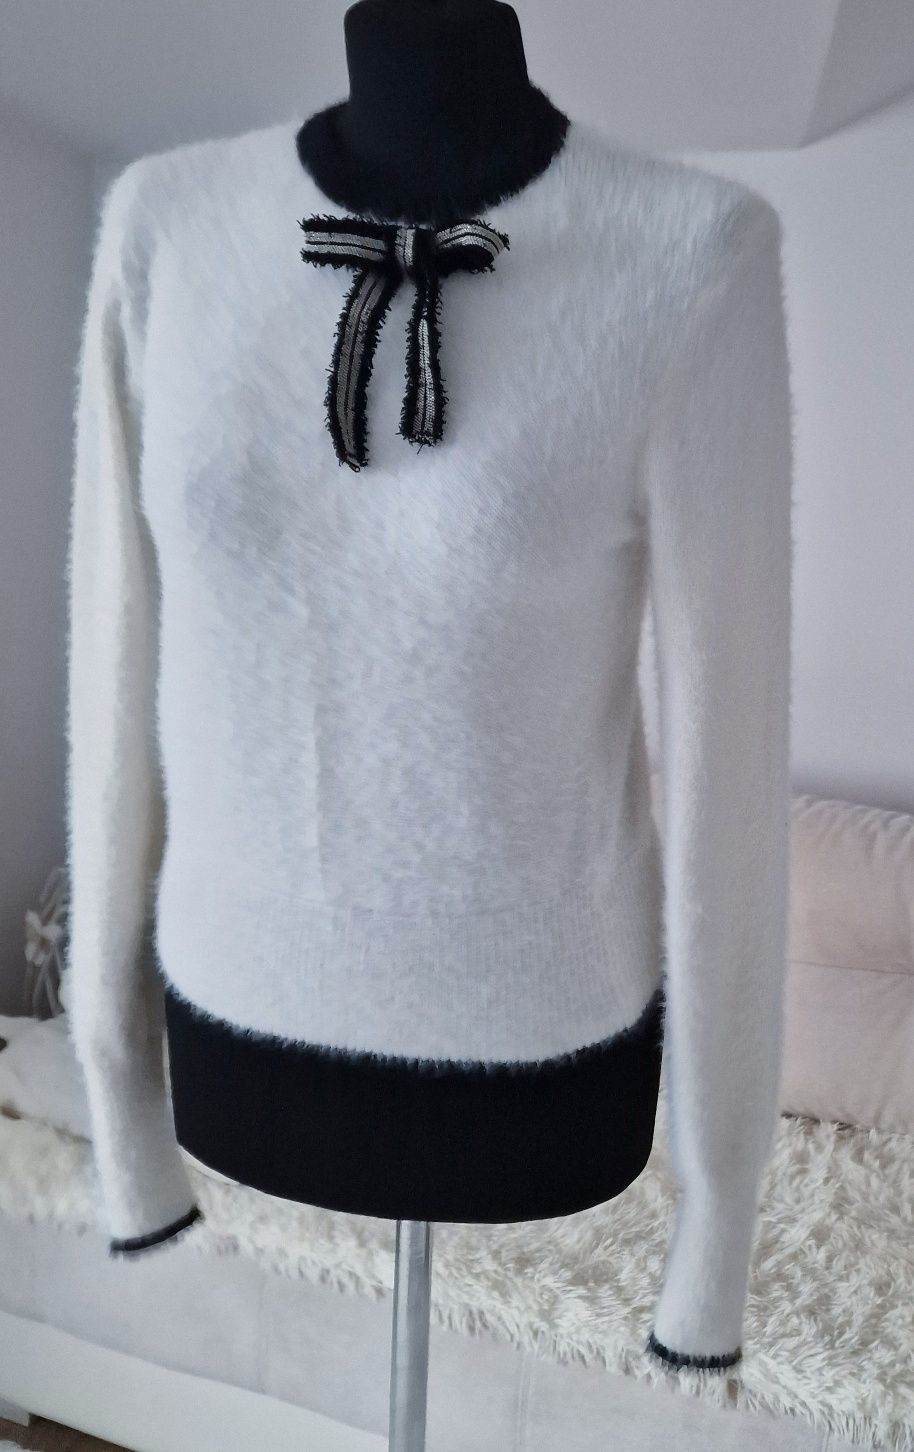 Puchaty sweterek z ozdobną kokardką " Zara".